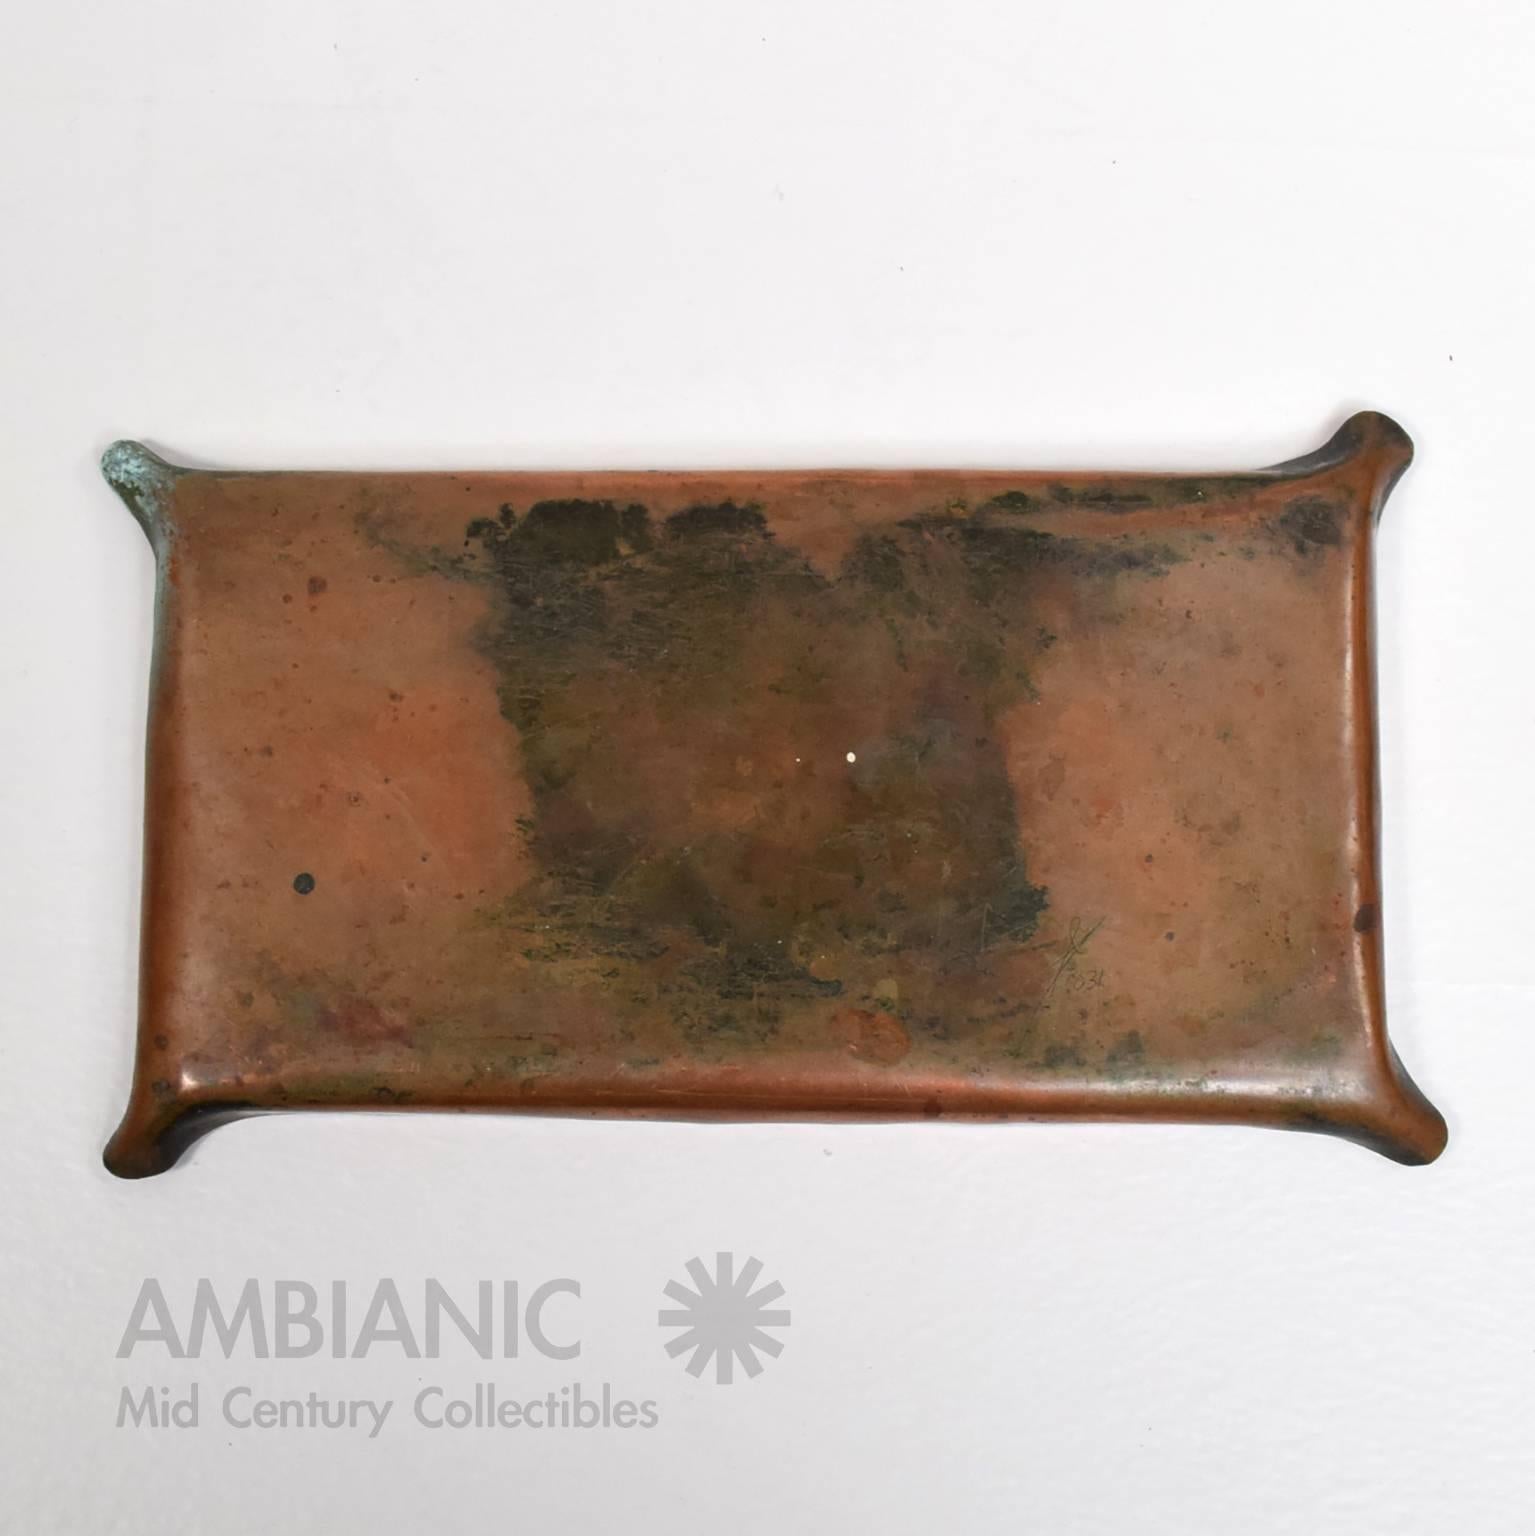 American Art Deco Decorative Copper Plate Ashtray Signed